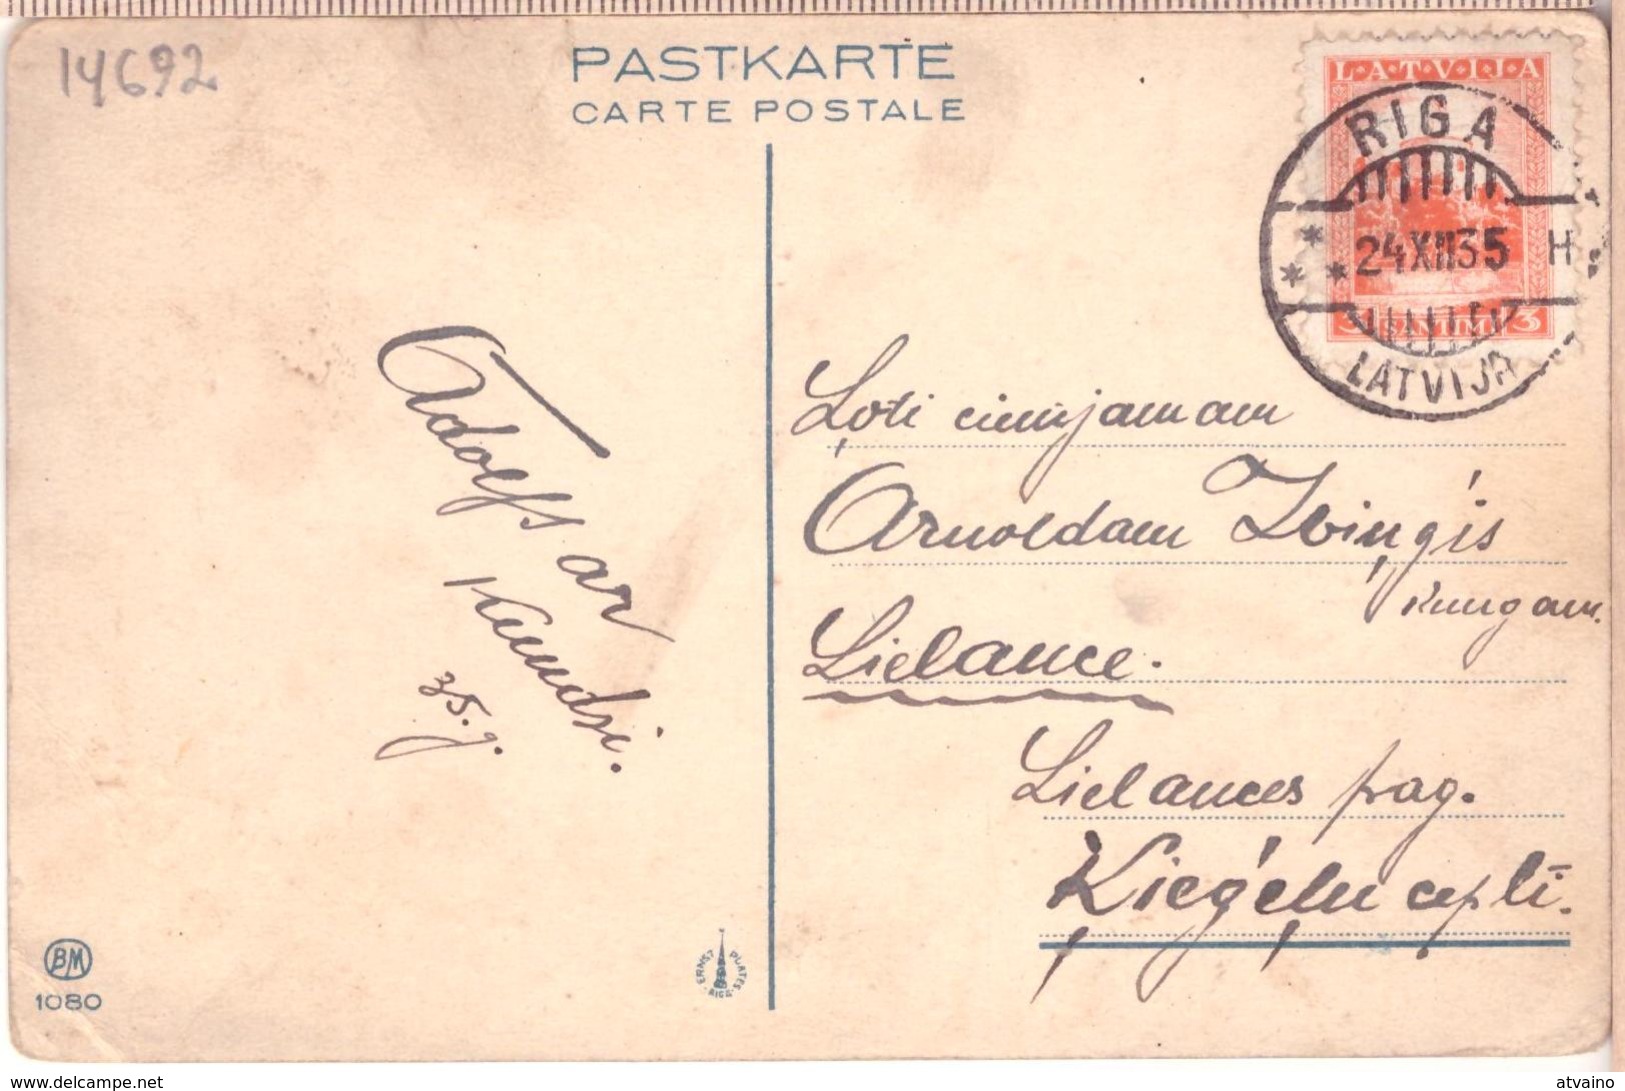 LATVIA.LETTLAND. Kasparsons. Latvian Painters 1935 Photo Postcard - Latvia